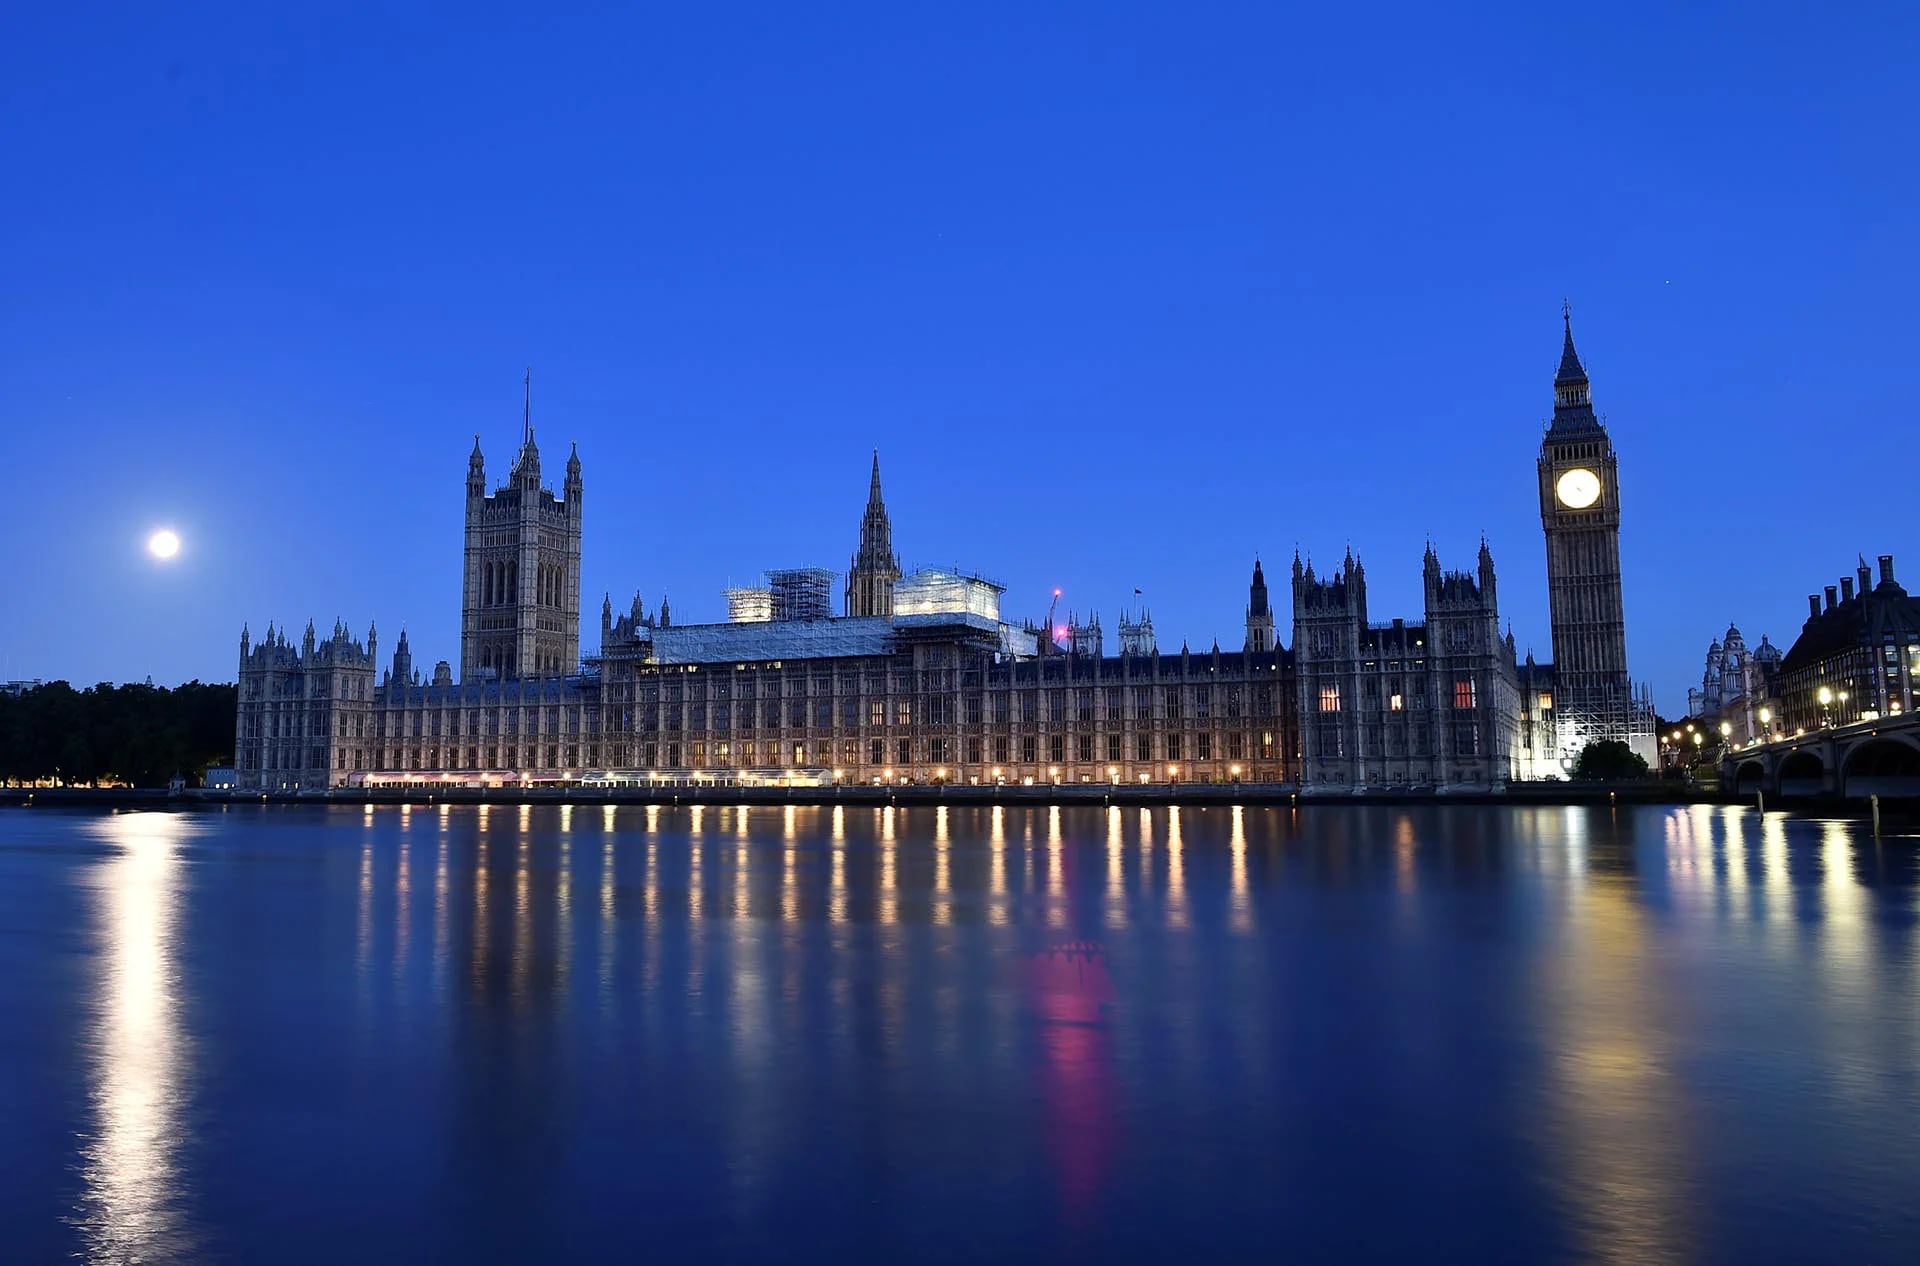 Sale el sol sobre el Parlamento británico el 9 de junio de 2017